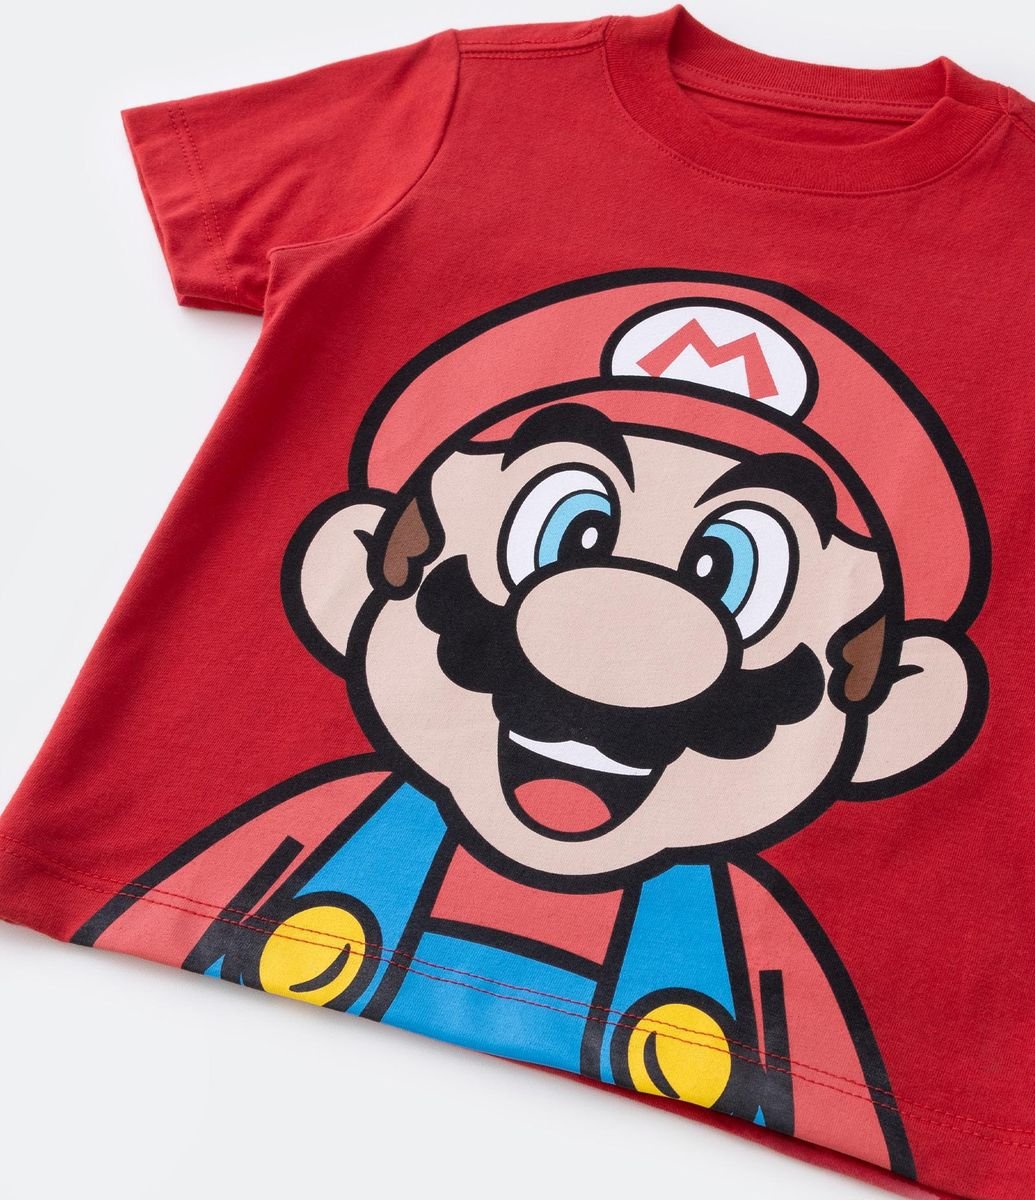 Camiseta Infantil com Estampa do Mario Bros - Tam 3 a 10 Anos Vermelho